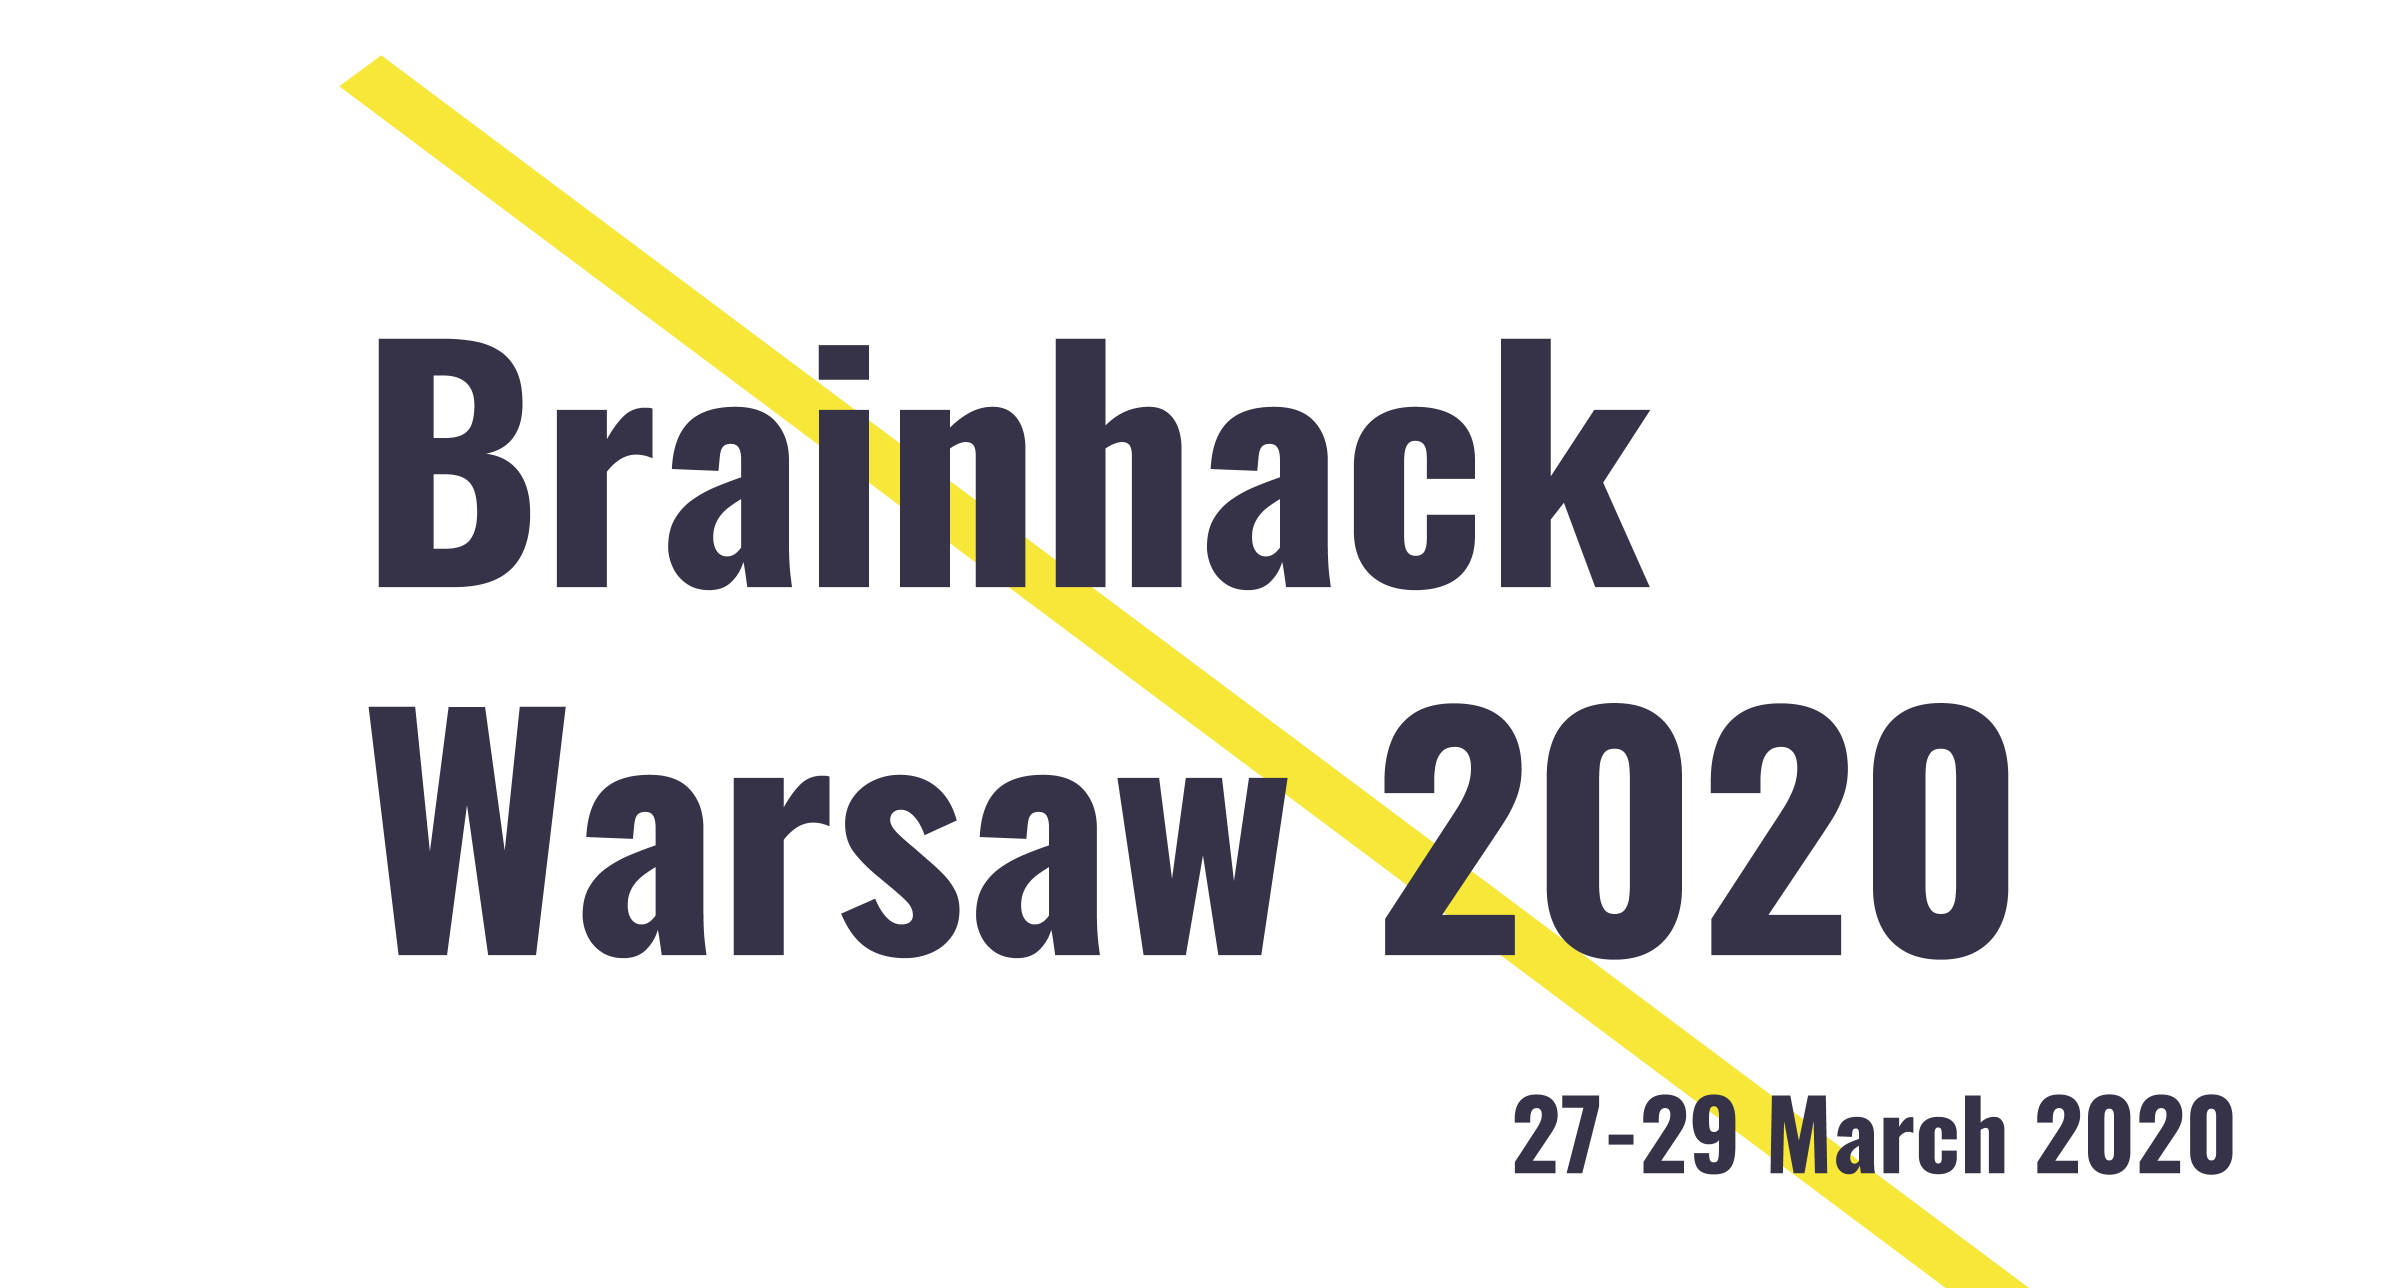 Brainhack Warsaw